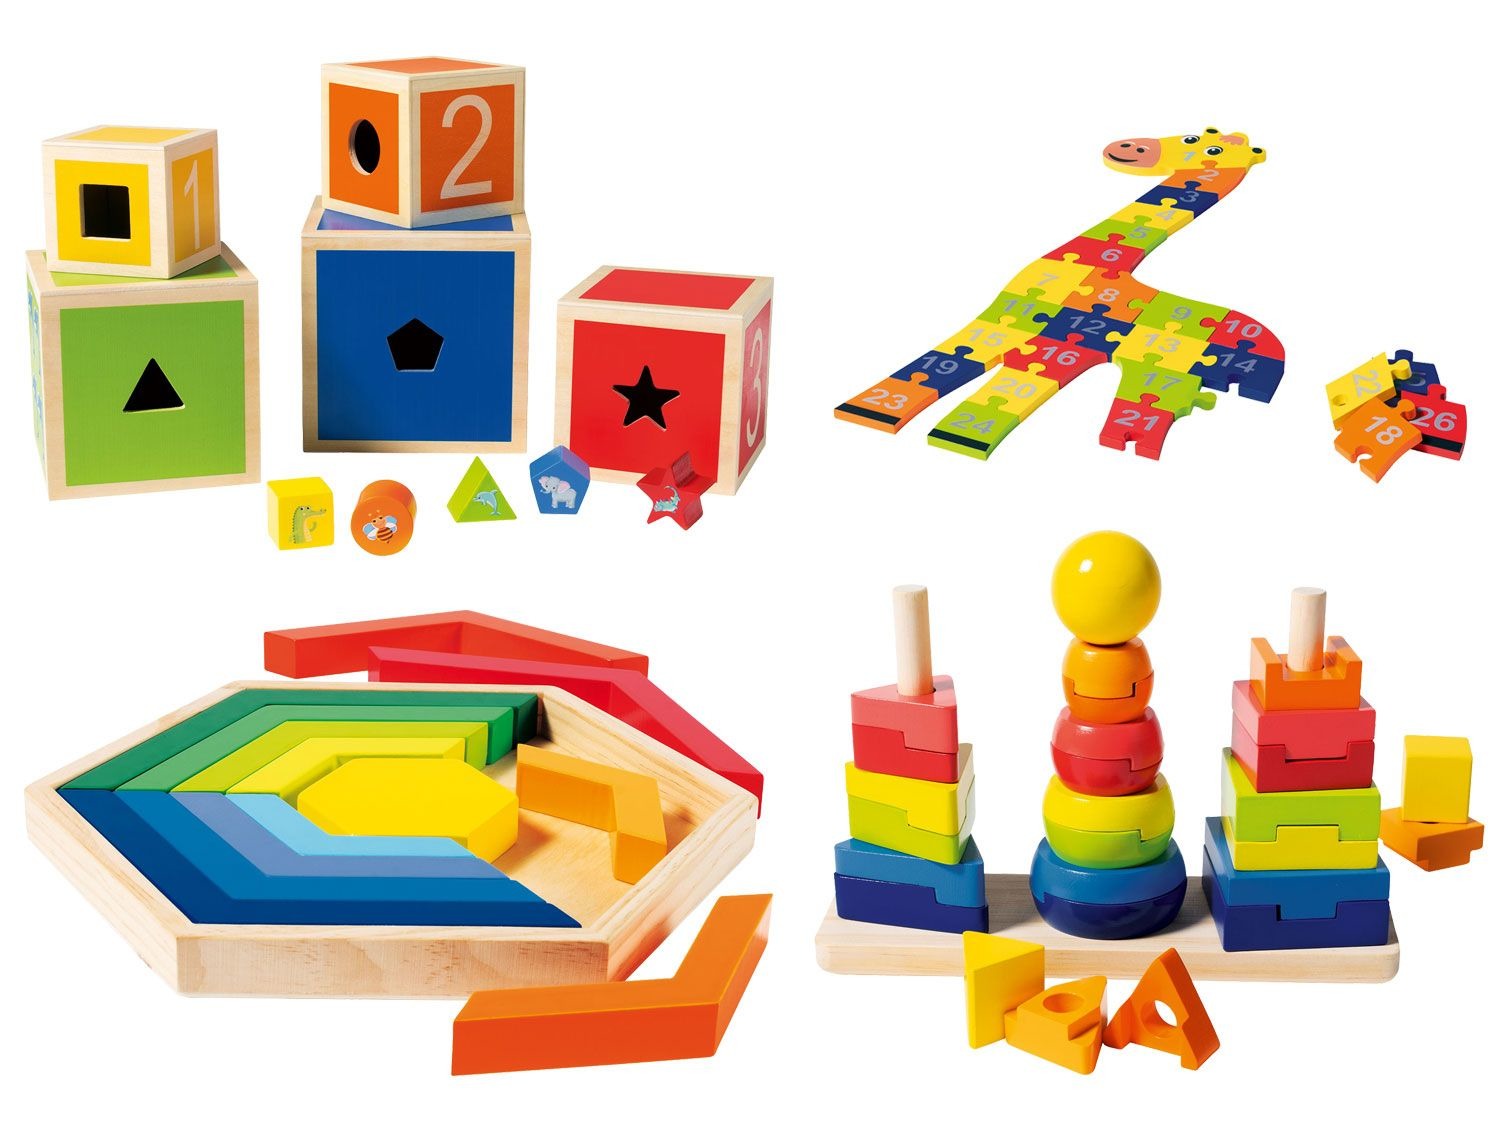 chaos Verbergen Scorch Playtive JUNIOR Houten speelgoed online kopen | LIDL